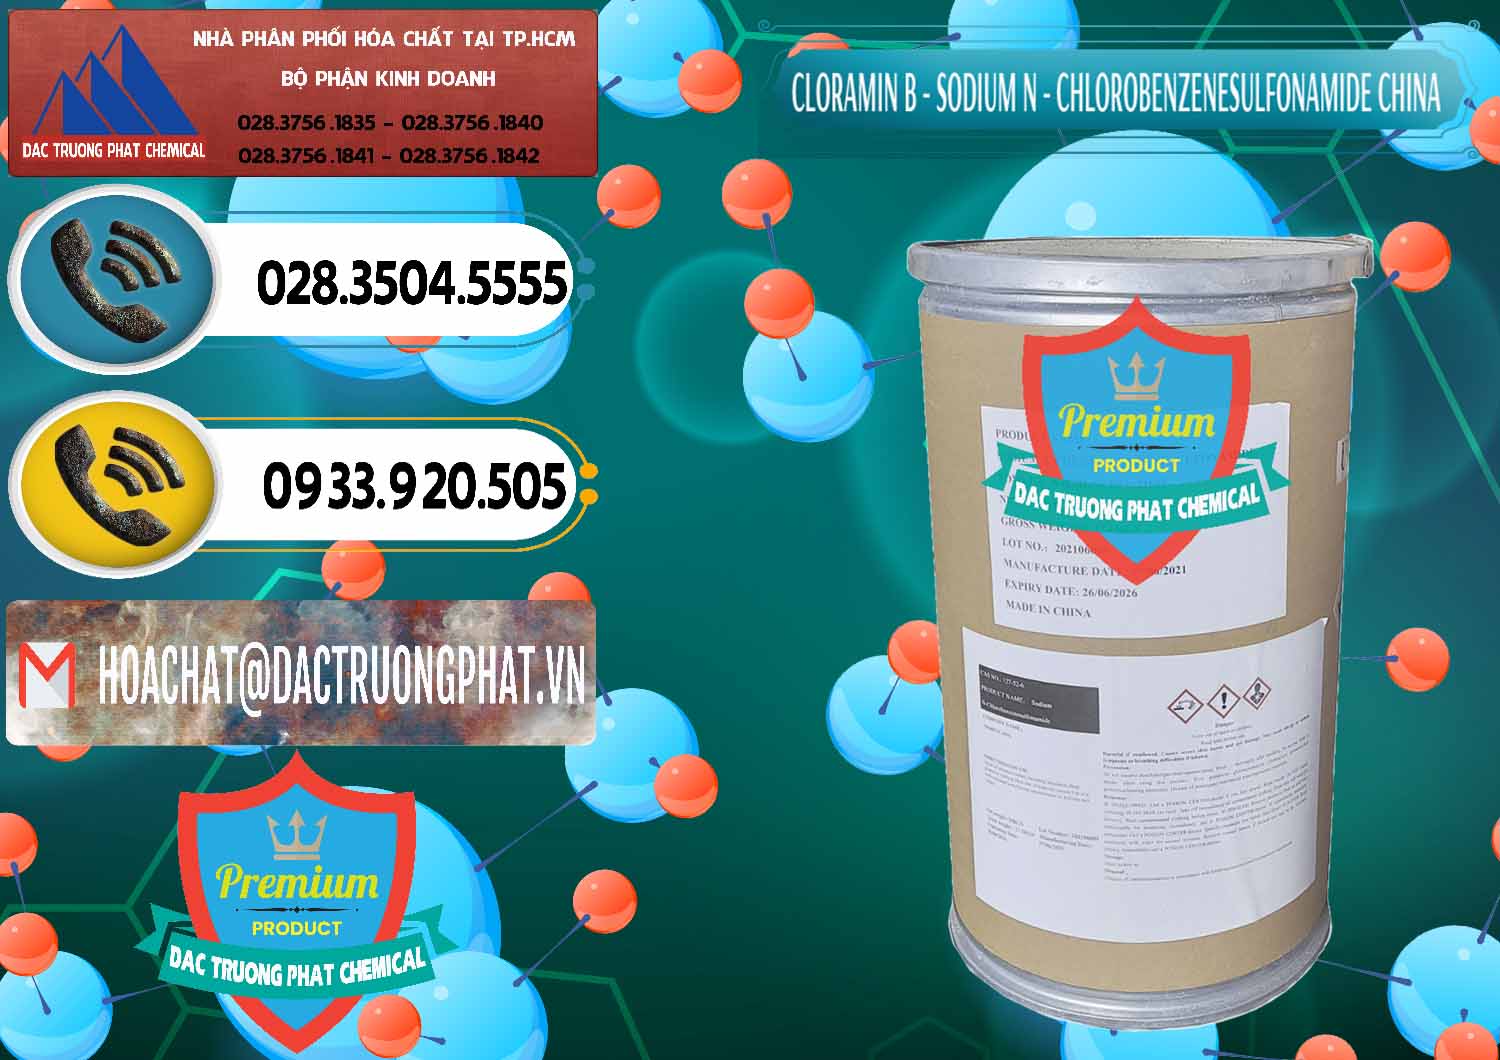 Nơi chuyên bán và phân phối Cloramin B Khử Trùng, Diệt Khuẩn Trung Quốc China - 0298 - Công ty bán và phân phối hóa chất tại TP.HCM - hoachatdetnhuom.vn